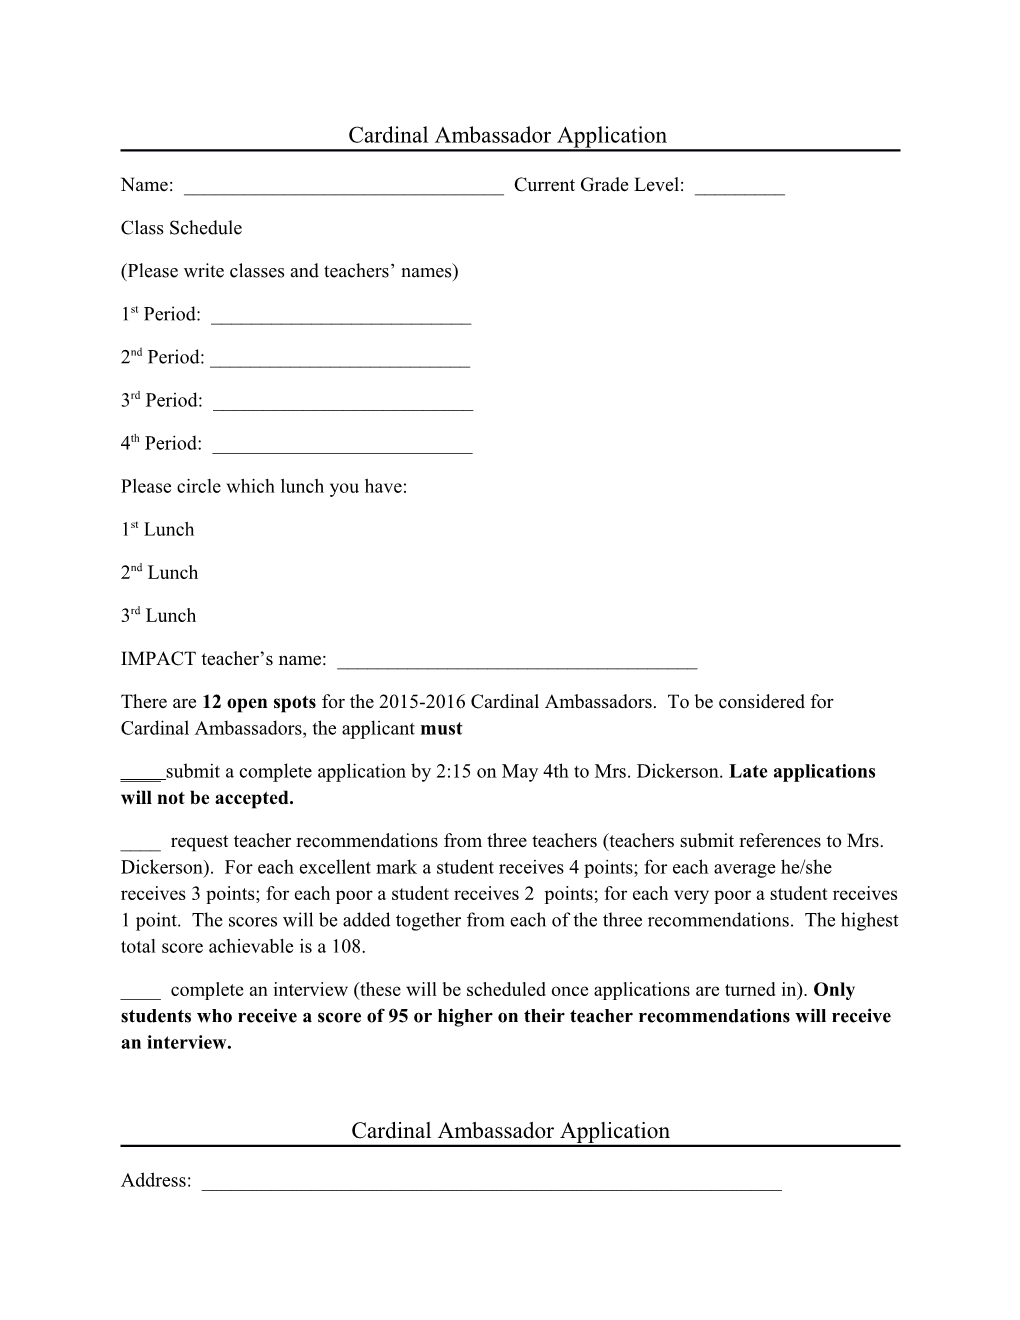 Cardinal Ambassador Application